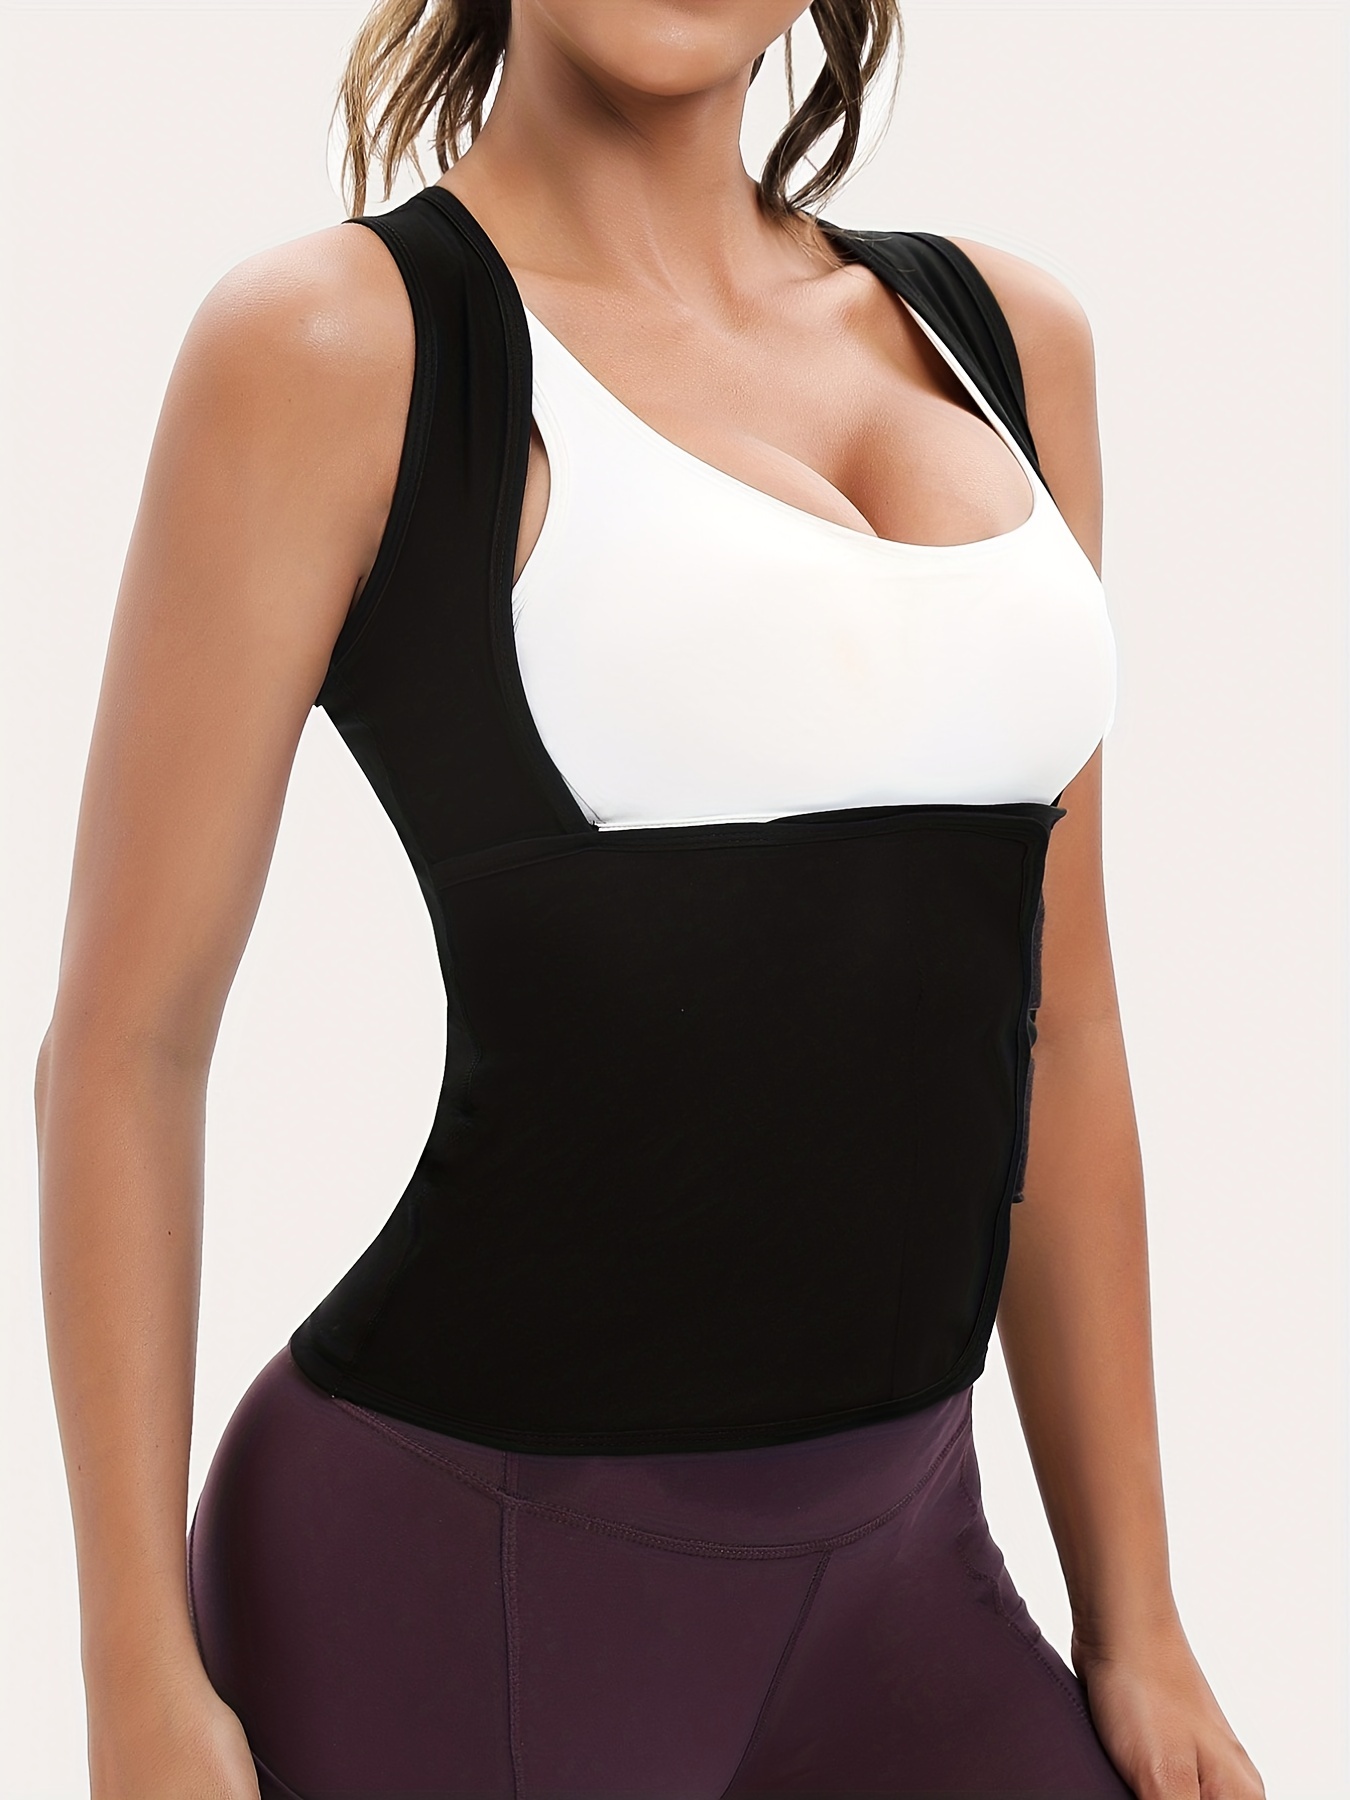 Sudadera deportiva para mujer, camiseta sin mangas de entrenamiento prémium  para adelgazar y moldear el cuerpo, pérdida de peso y desintoxicación